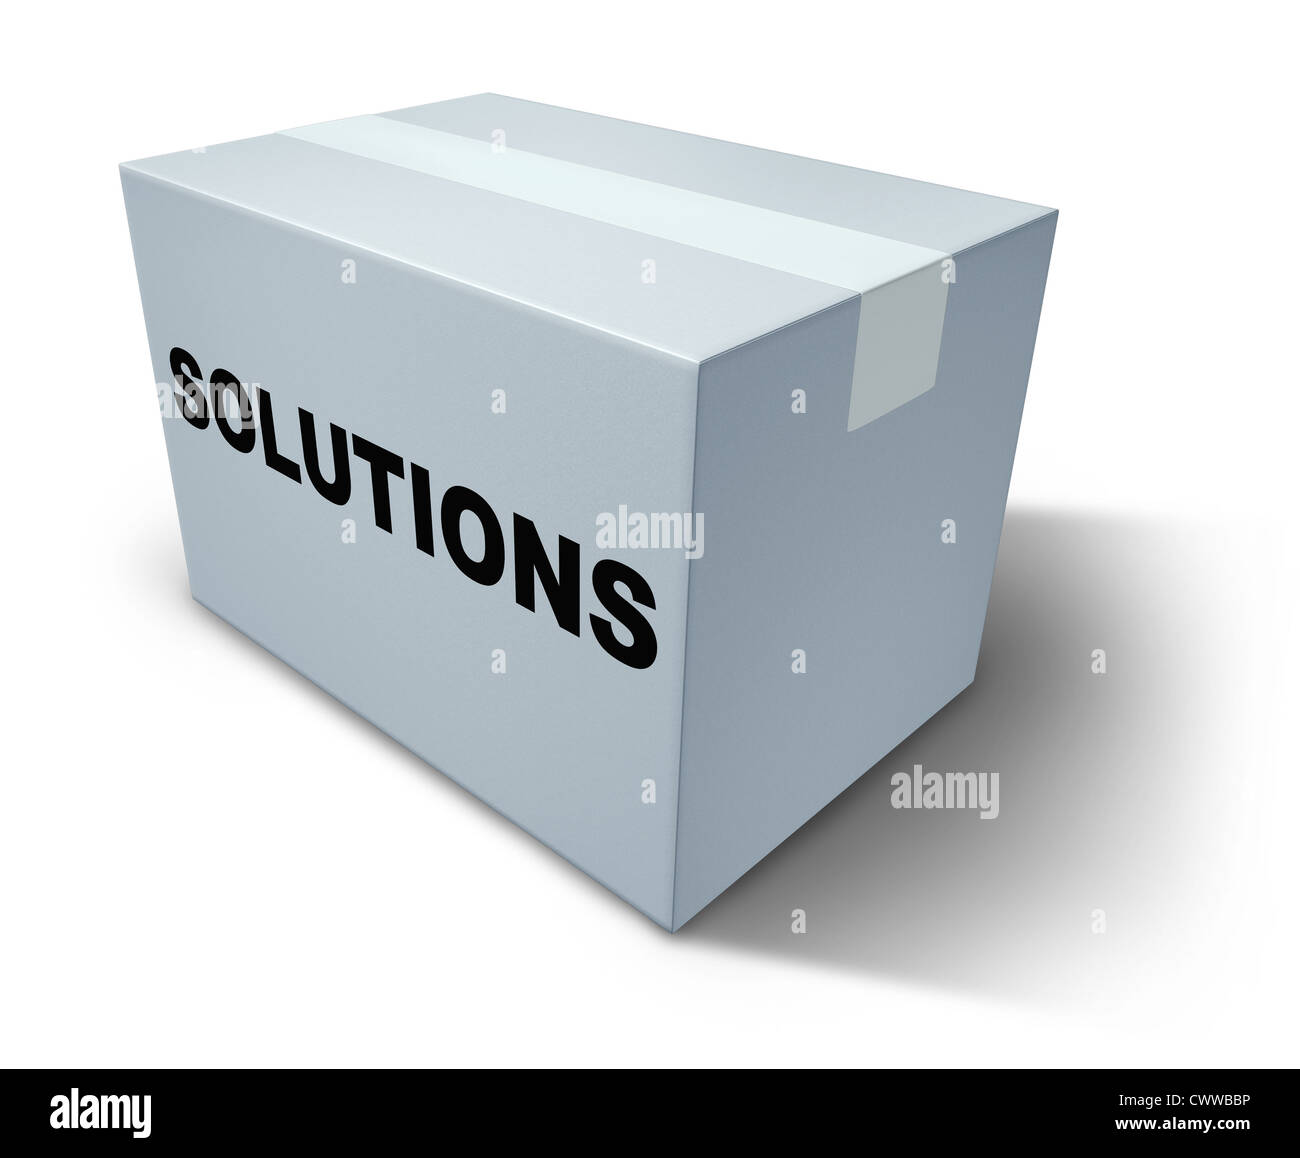 Soluzioni e risposte su una casella bianca che rappresentano le strategie creative per la risoluzione di un problema e pianificazione all'interno di una scatola chiusa che può essere aperto per rivelare la direzione positiva per un'azienda. Foto Stock